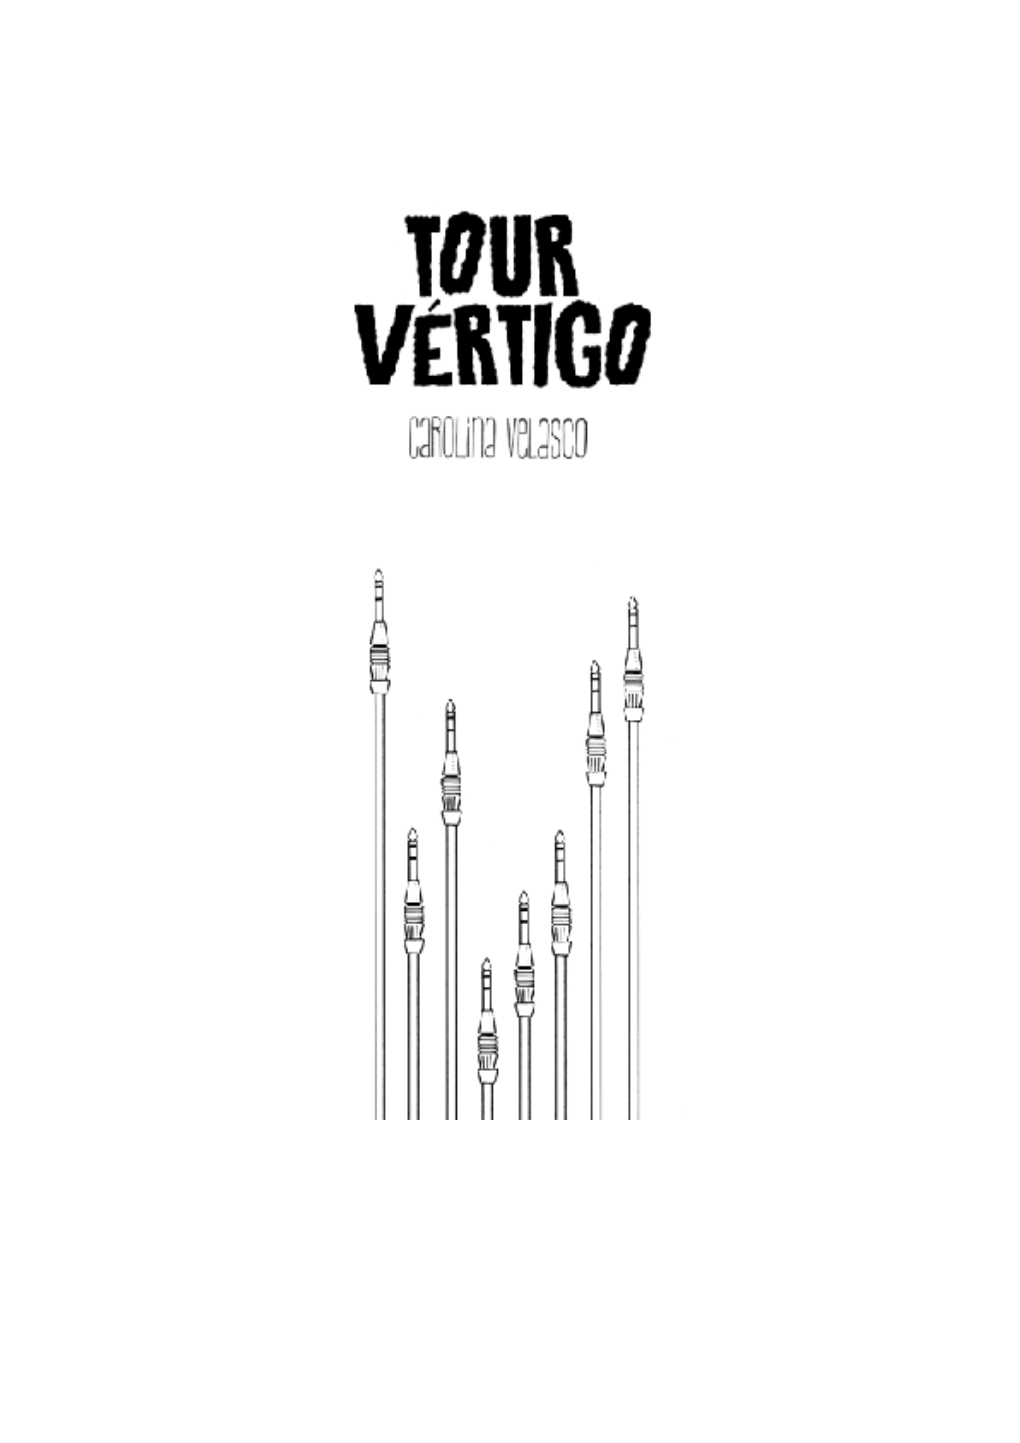 Tour Vértigo